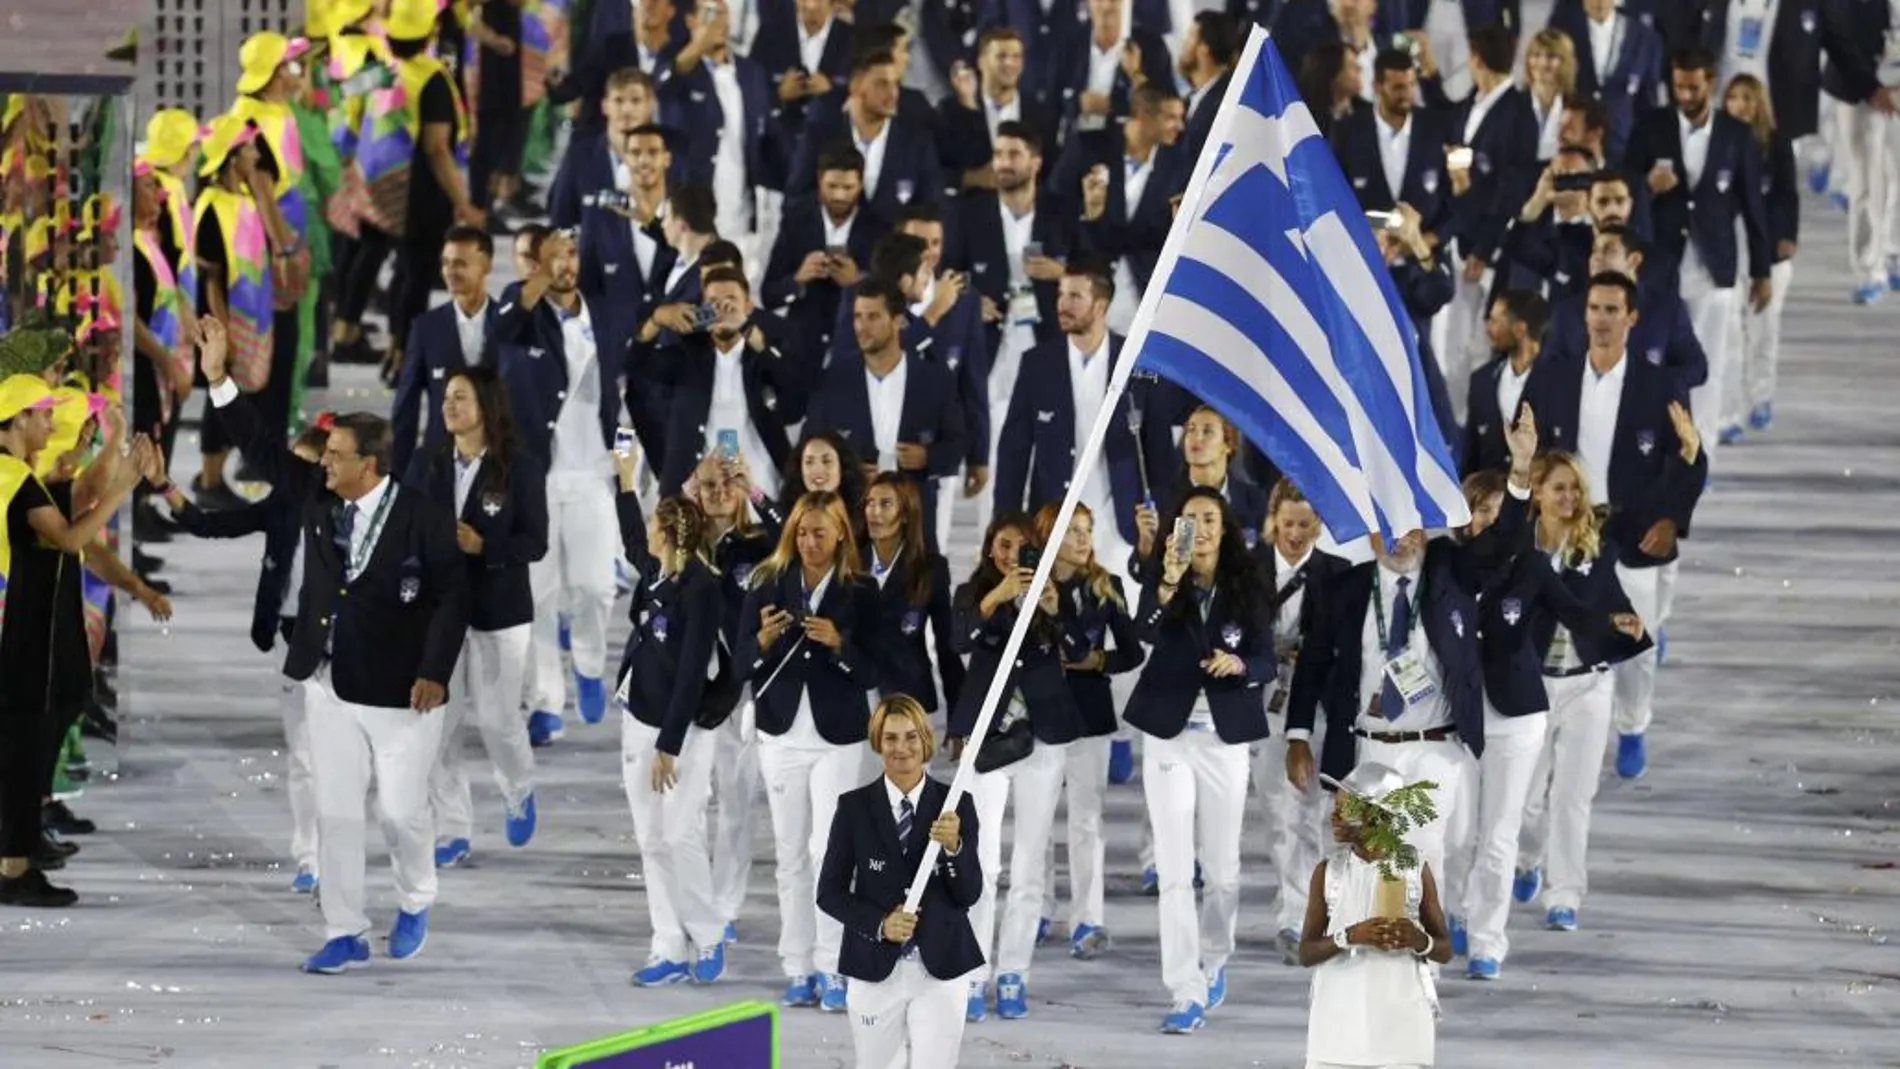 El equipo olímpico de Grecia que tradiconalmente inaugura el desfile de los países participantes